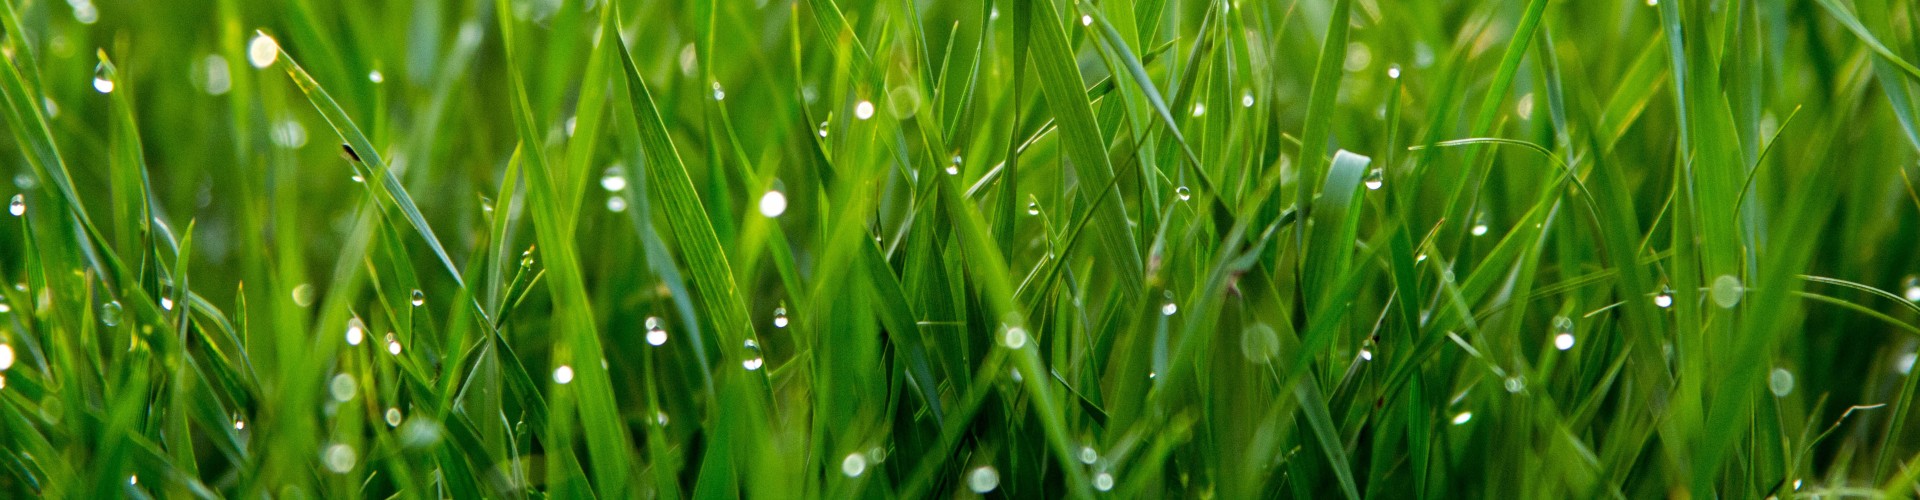 Dew-drop grass